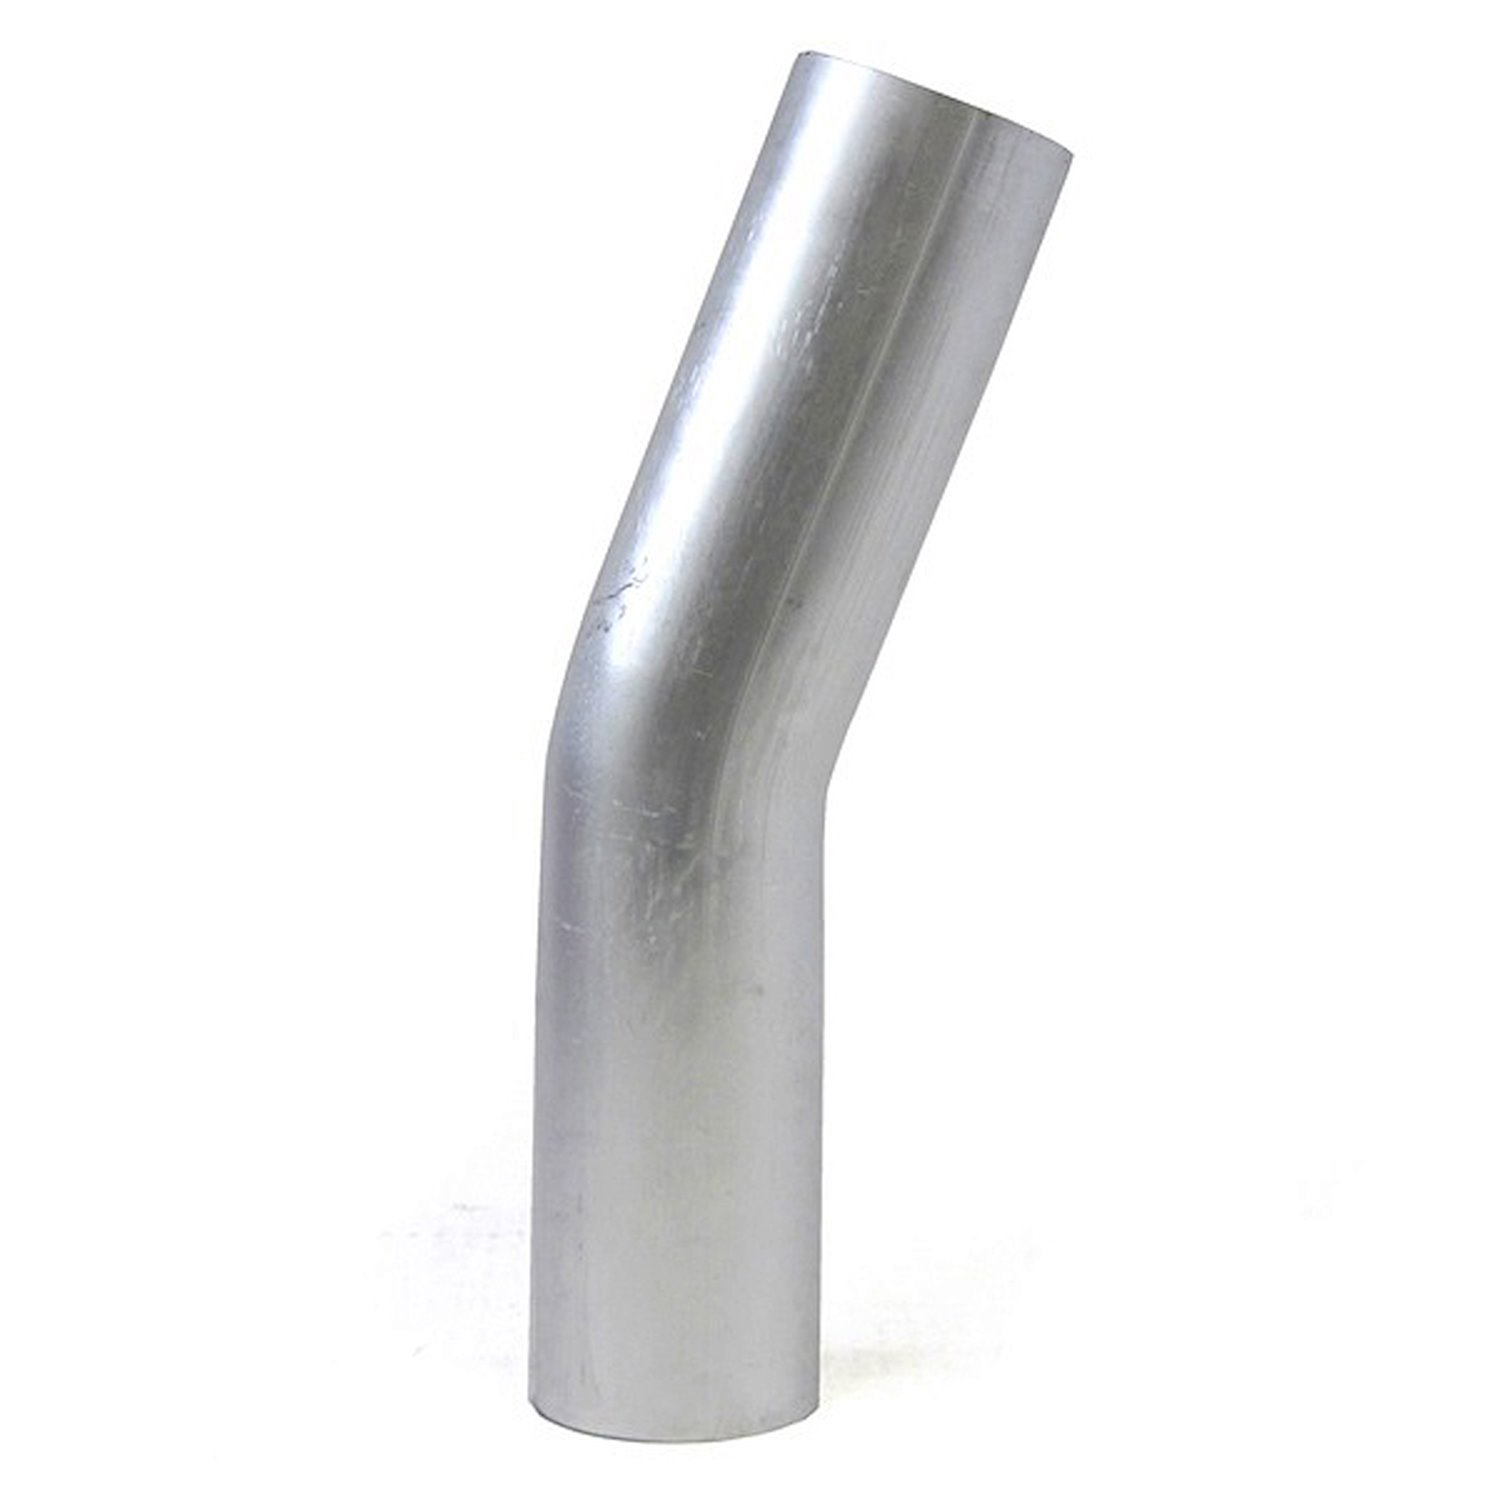 AT20-325-CLR-35 Aluminum Elbow Tube, 6061 Aluminum, 20-Degree Bend Elbow Tubing, 3-1/4 in. OD, Tight Radius, 3-1/2 in. CLR